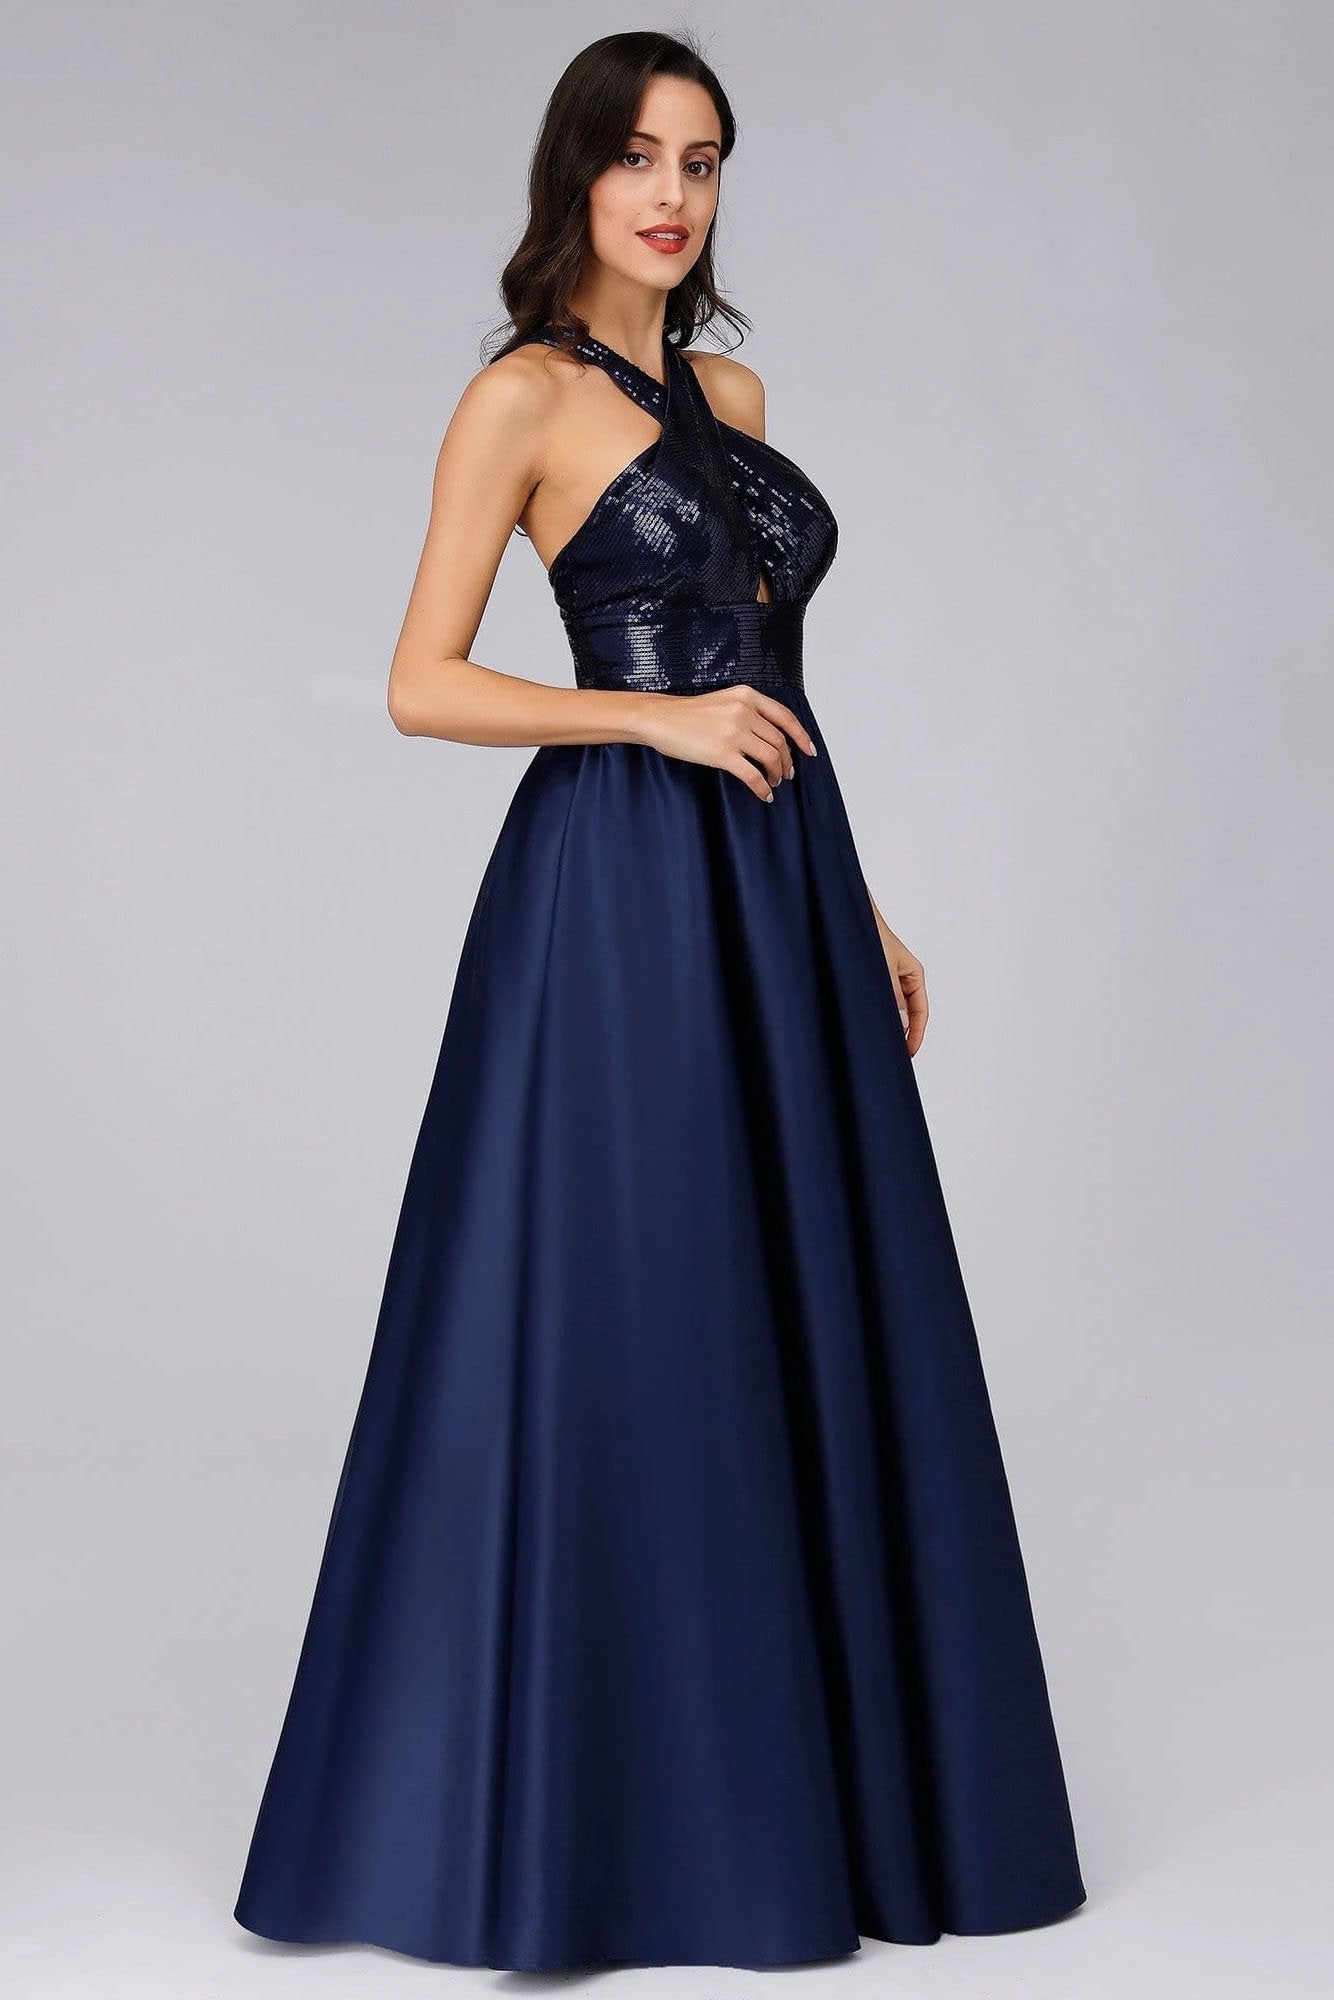 Cold Shoulder Sequin Navy Blue Prom Dresses Backless Satin Long Evening Dresses SRS15132